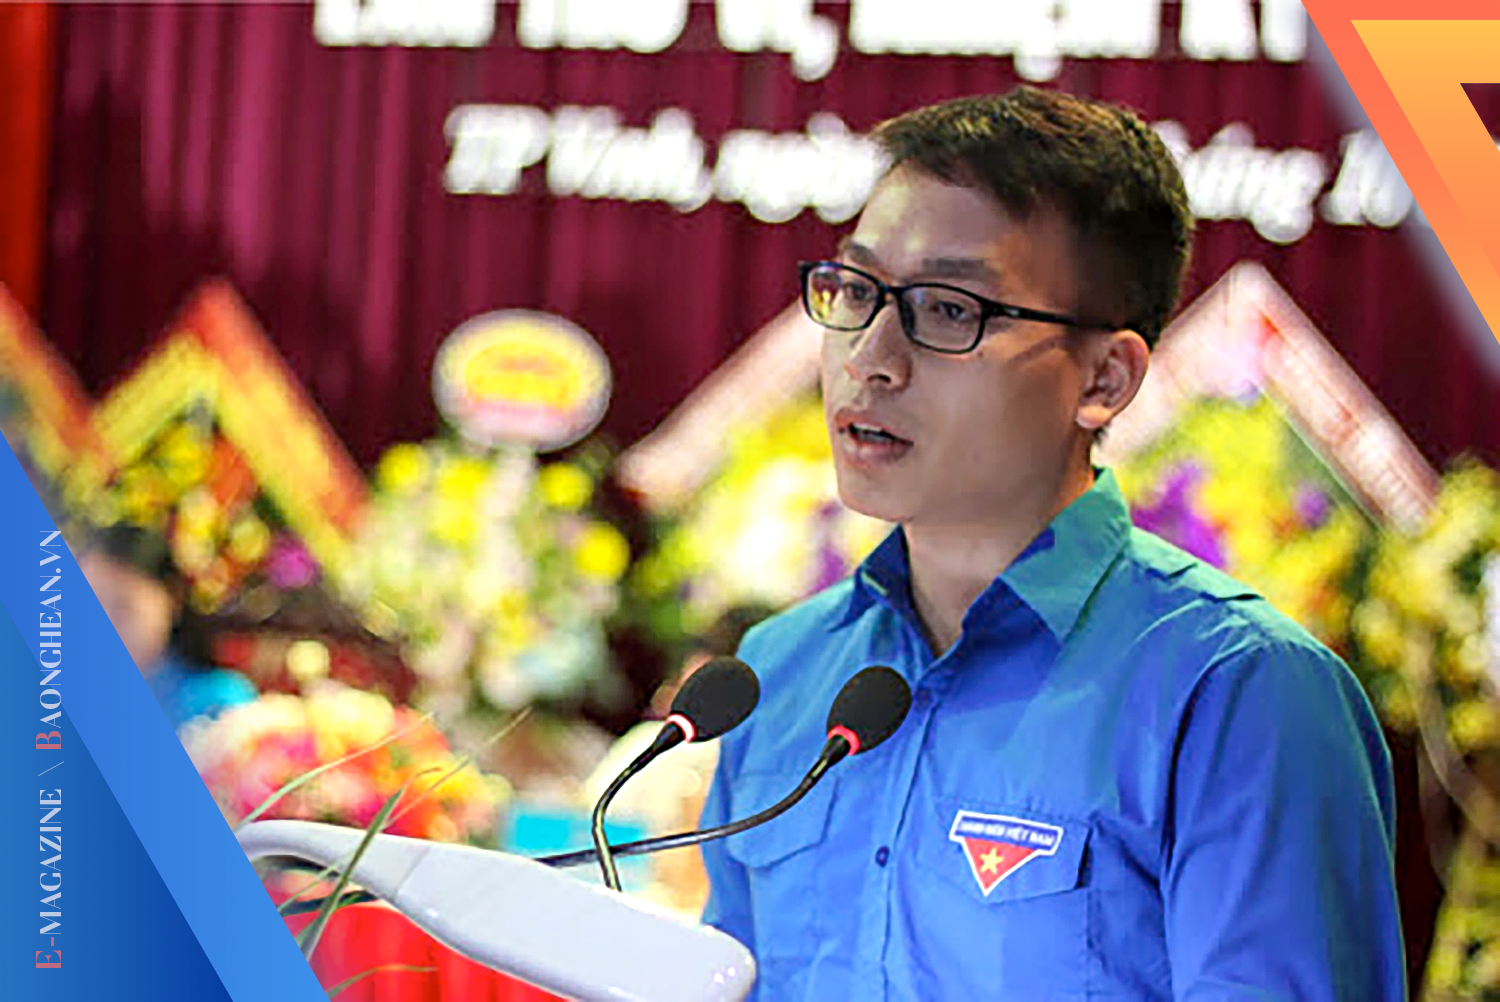 Nghiêm Tiến Viễn trong trang phục Đoàn TNCS Hồ Chí Minh tham luận tại một hội nghị do Tỉnh đoàn tổ chức.